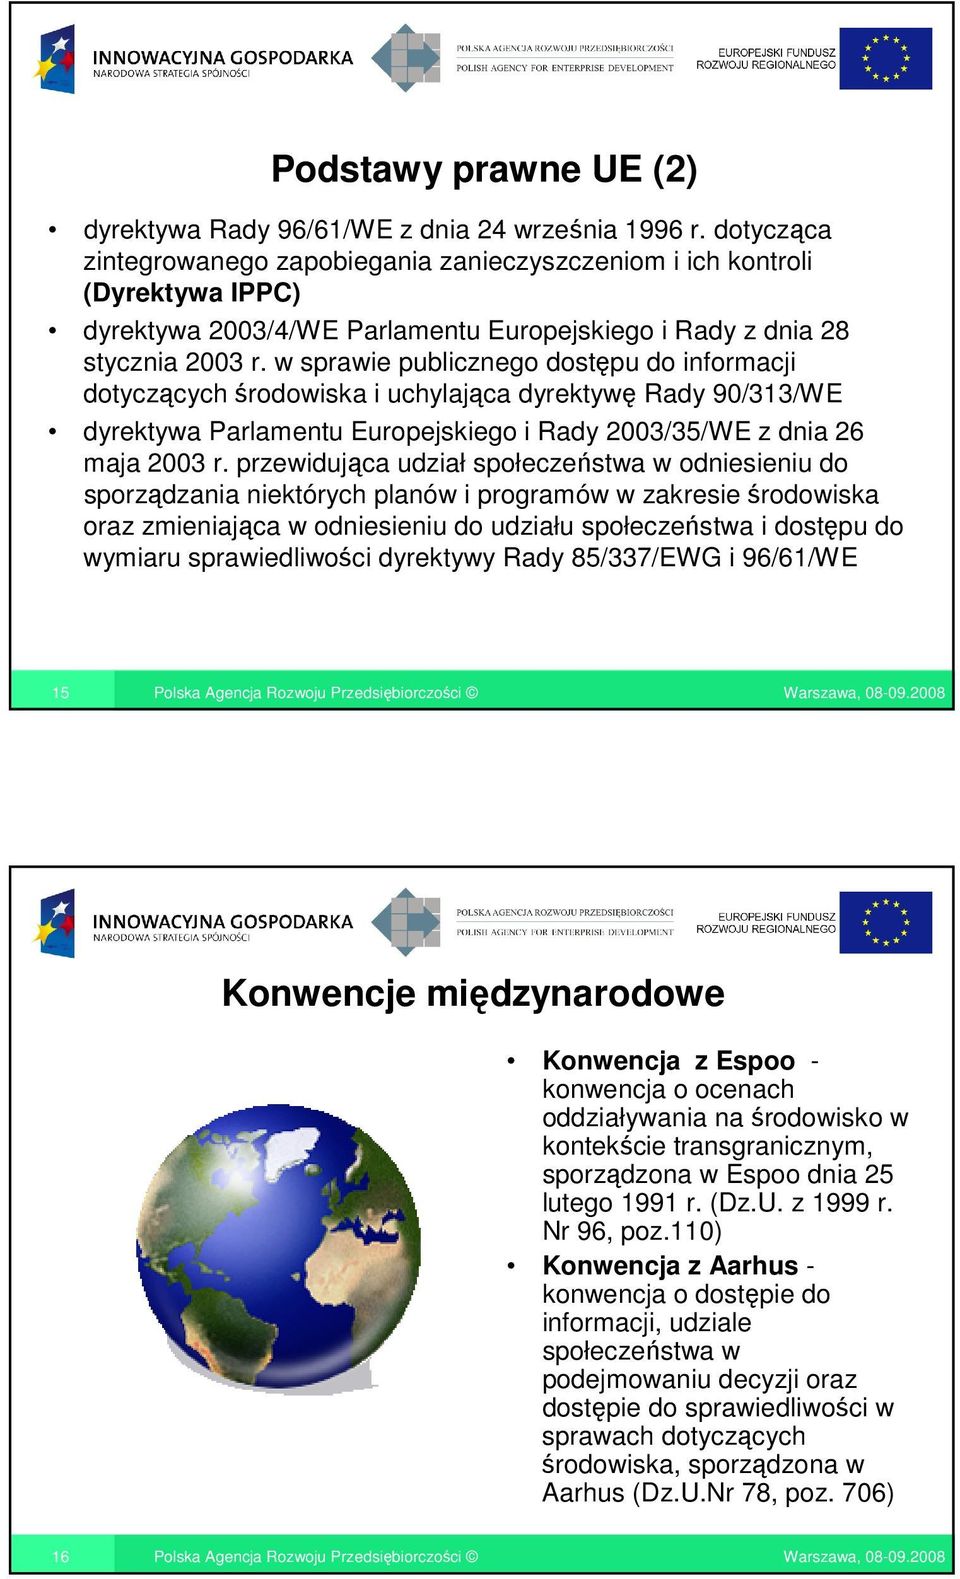 w sprawie publicznego dostępu do informacji dotyczących środowiska i uchylająca dyrektywę Rady 90/313/WE dyrektywa Parlamentu Europejskiego i Rady 2003/35/WE z dnia 26 maja 2003 r.